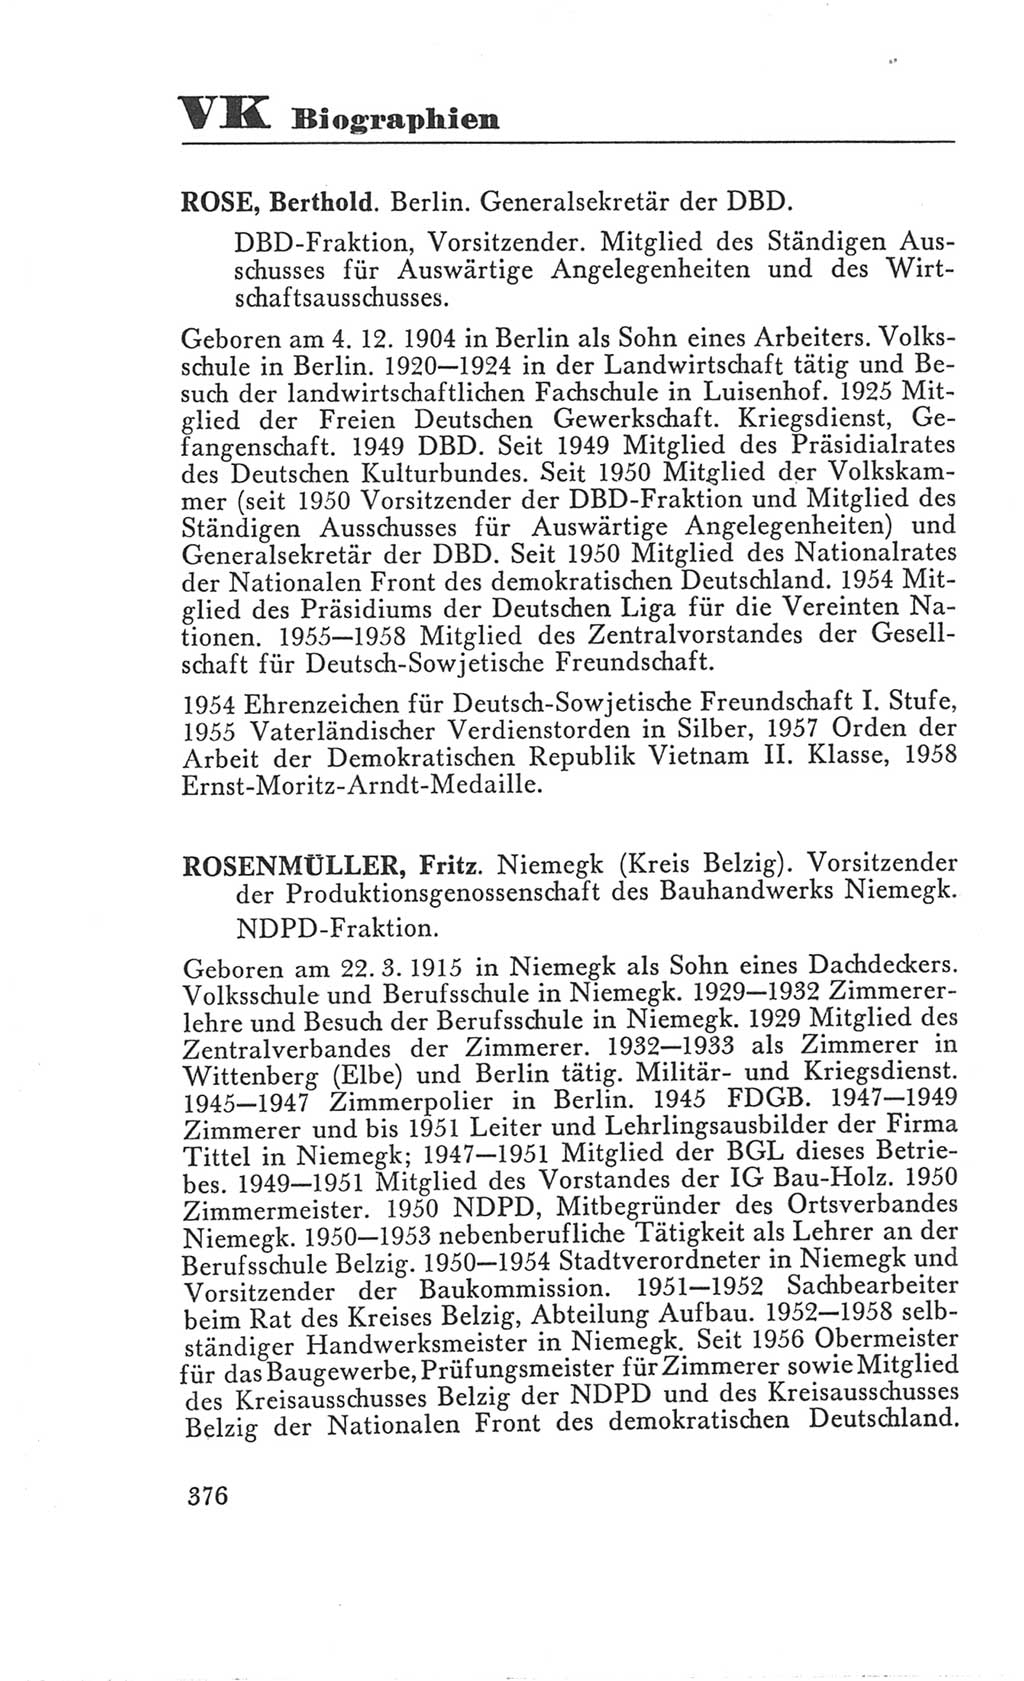 Handbuch der Volkskammer (VK) der Deutschen Demokratischen Republik (DDR), 3. Wahlperiode 1958-1963, Seite 376 (Hdb. VK. DDR 3. WP. 1958-1963, S. 376)